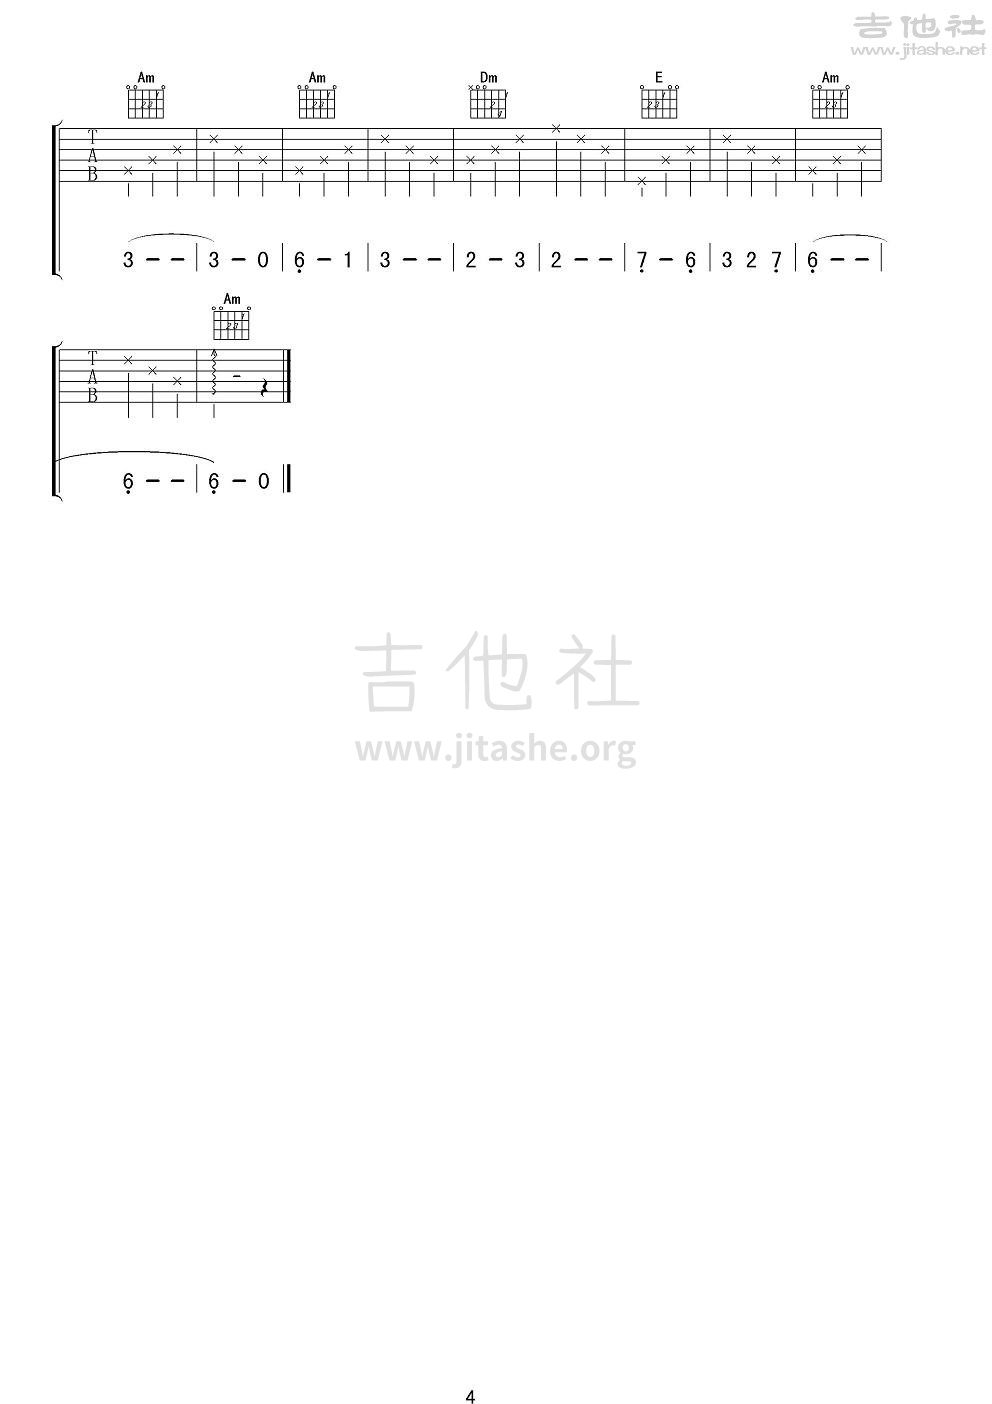 思恋吉他谱(图片谱,弹唱,男声版)_迪里拜尔_《思恋》男声版吉他谱4.JPG